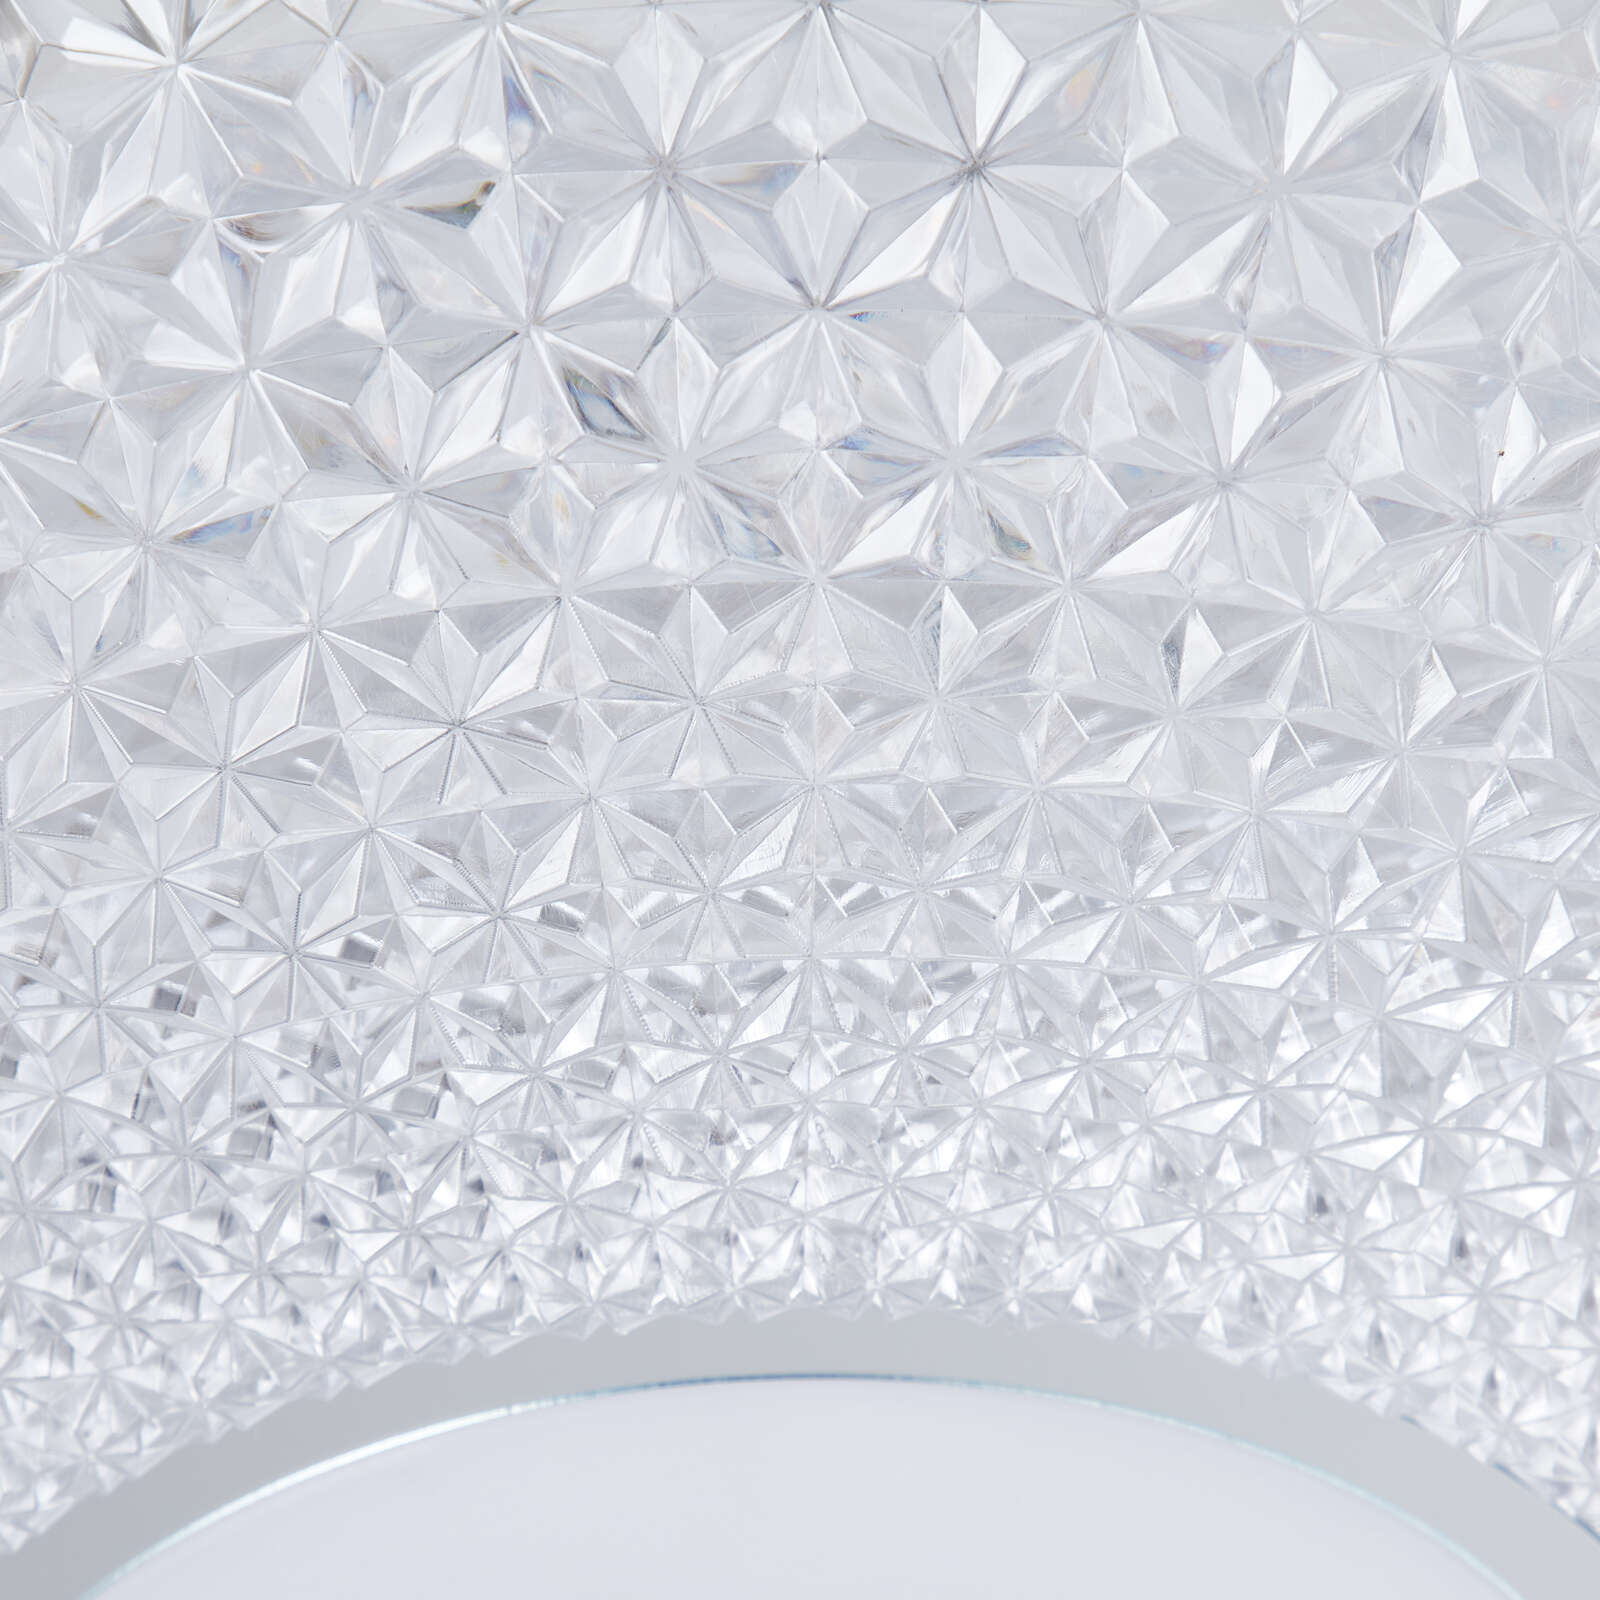             Plastic ceiling light - Luke 1 - Metallic
        